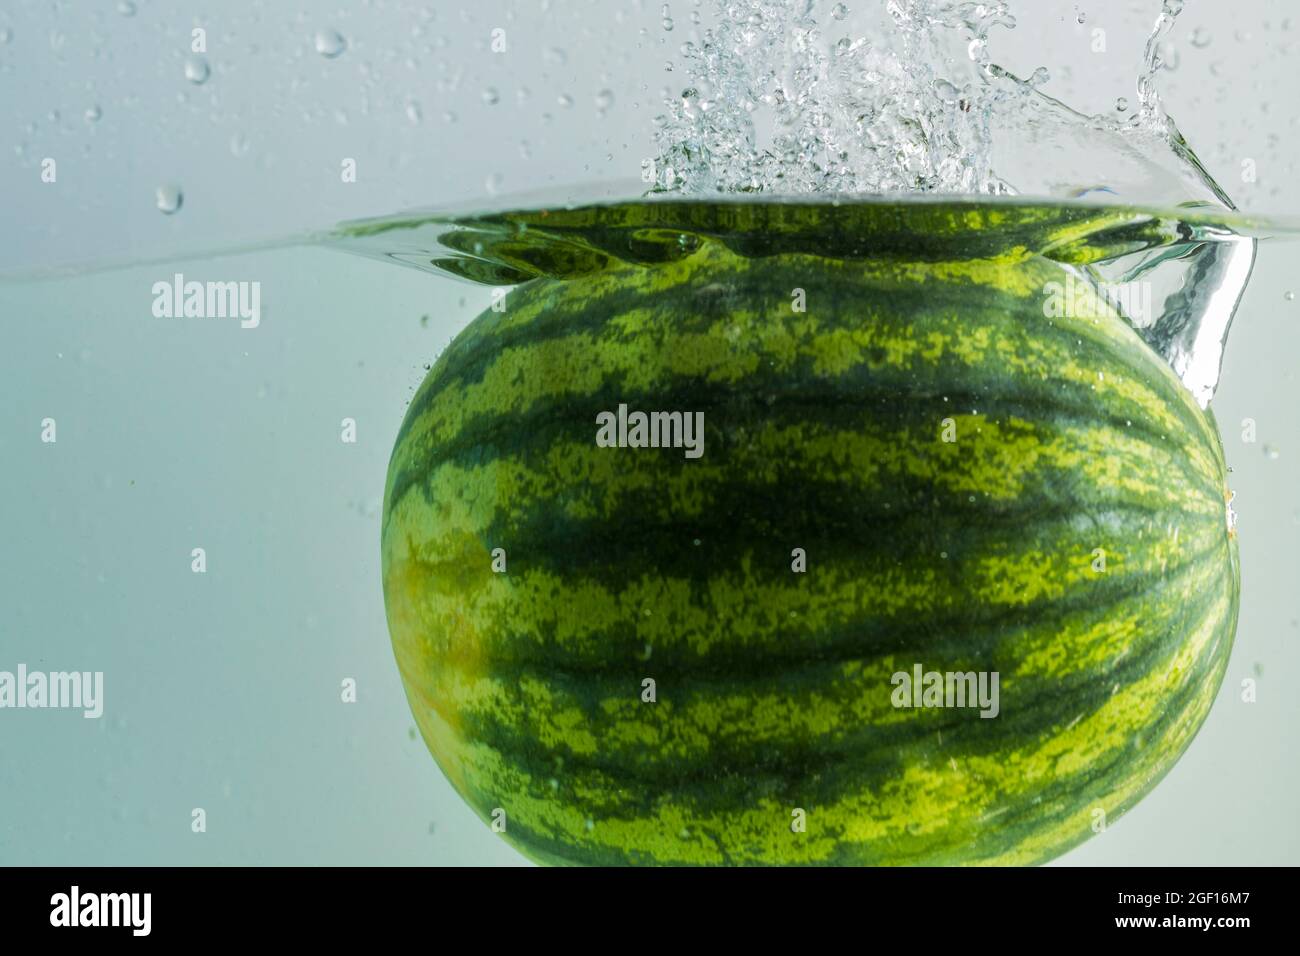 Nahaufnahme der Wassermelone, die auf türkisfarbenem Hintergrund ins Wasser  fällt. Wunderschöne Hintergründe Stockfotografie - Alamy